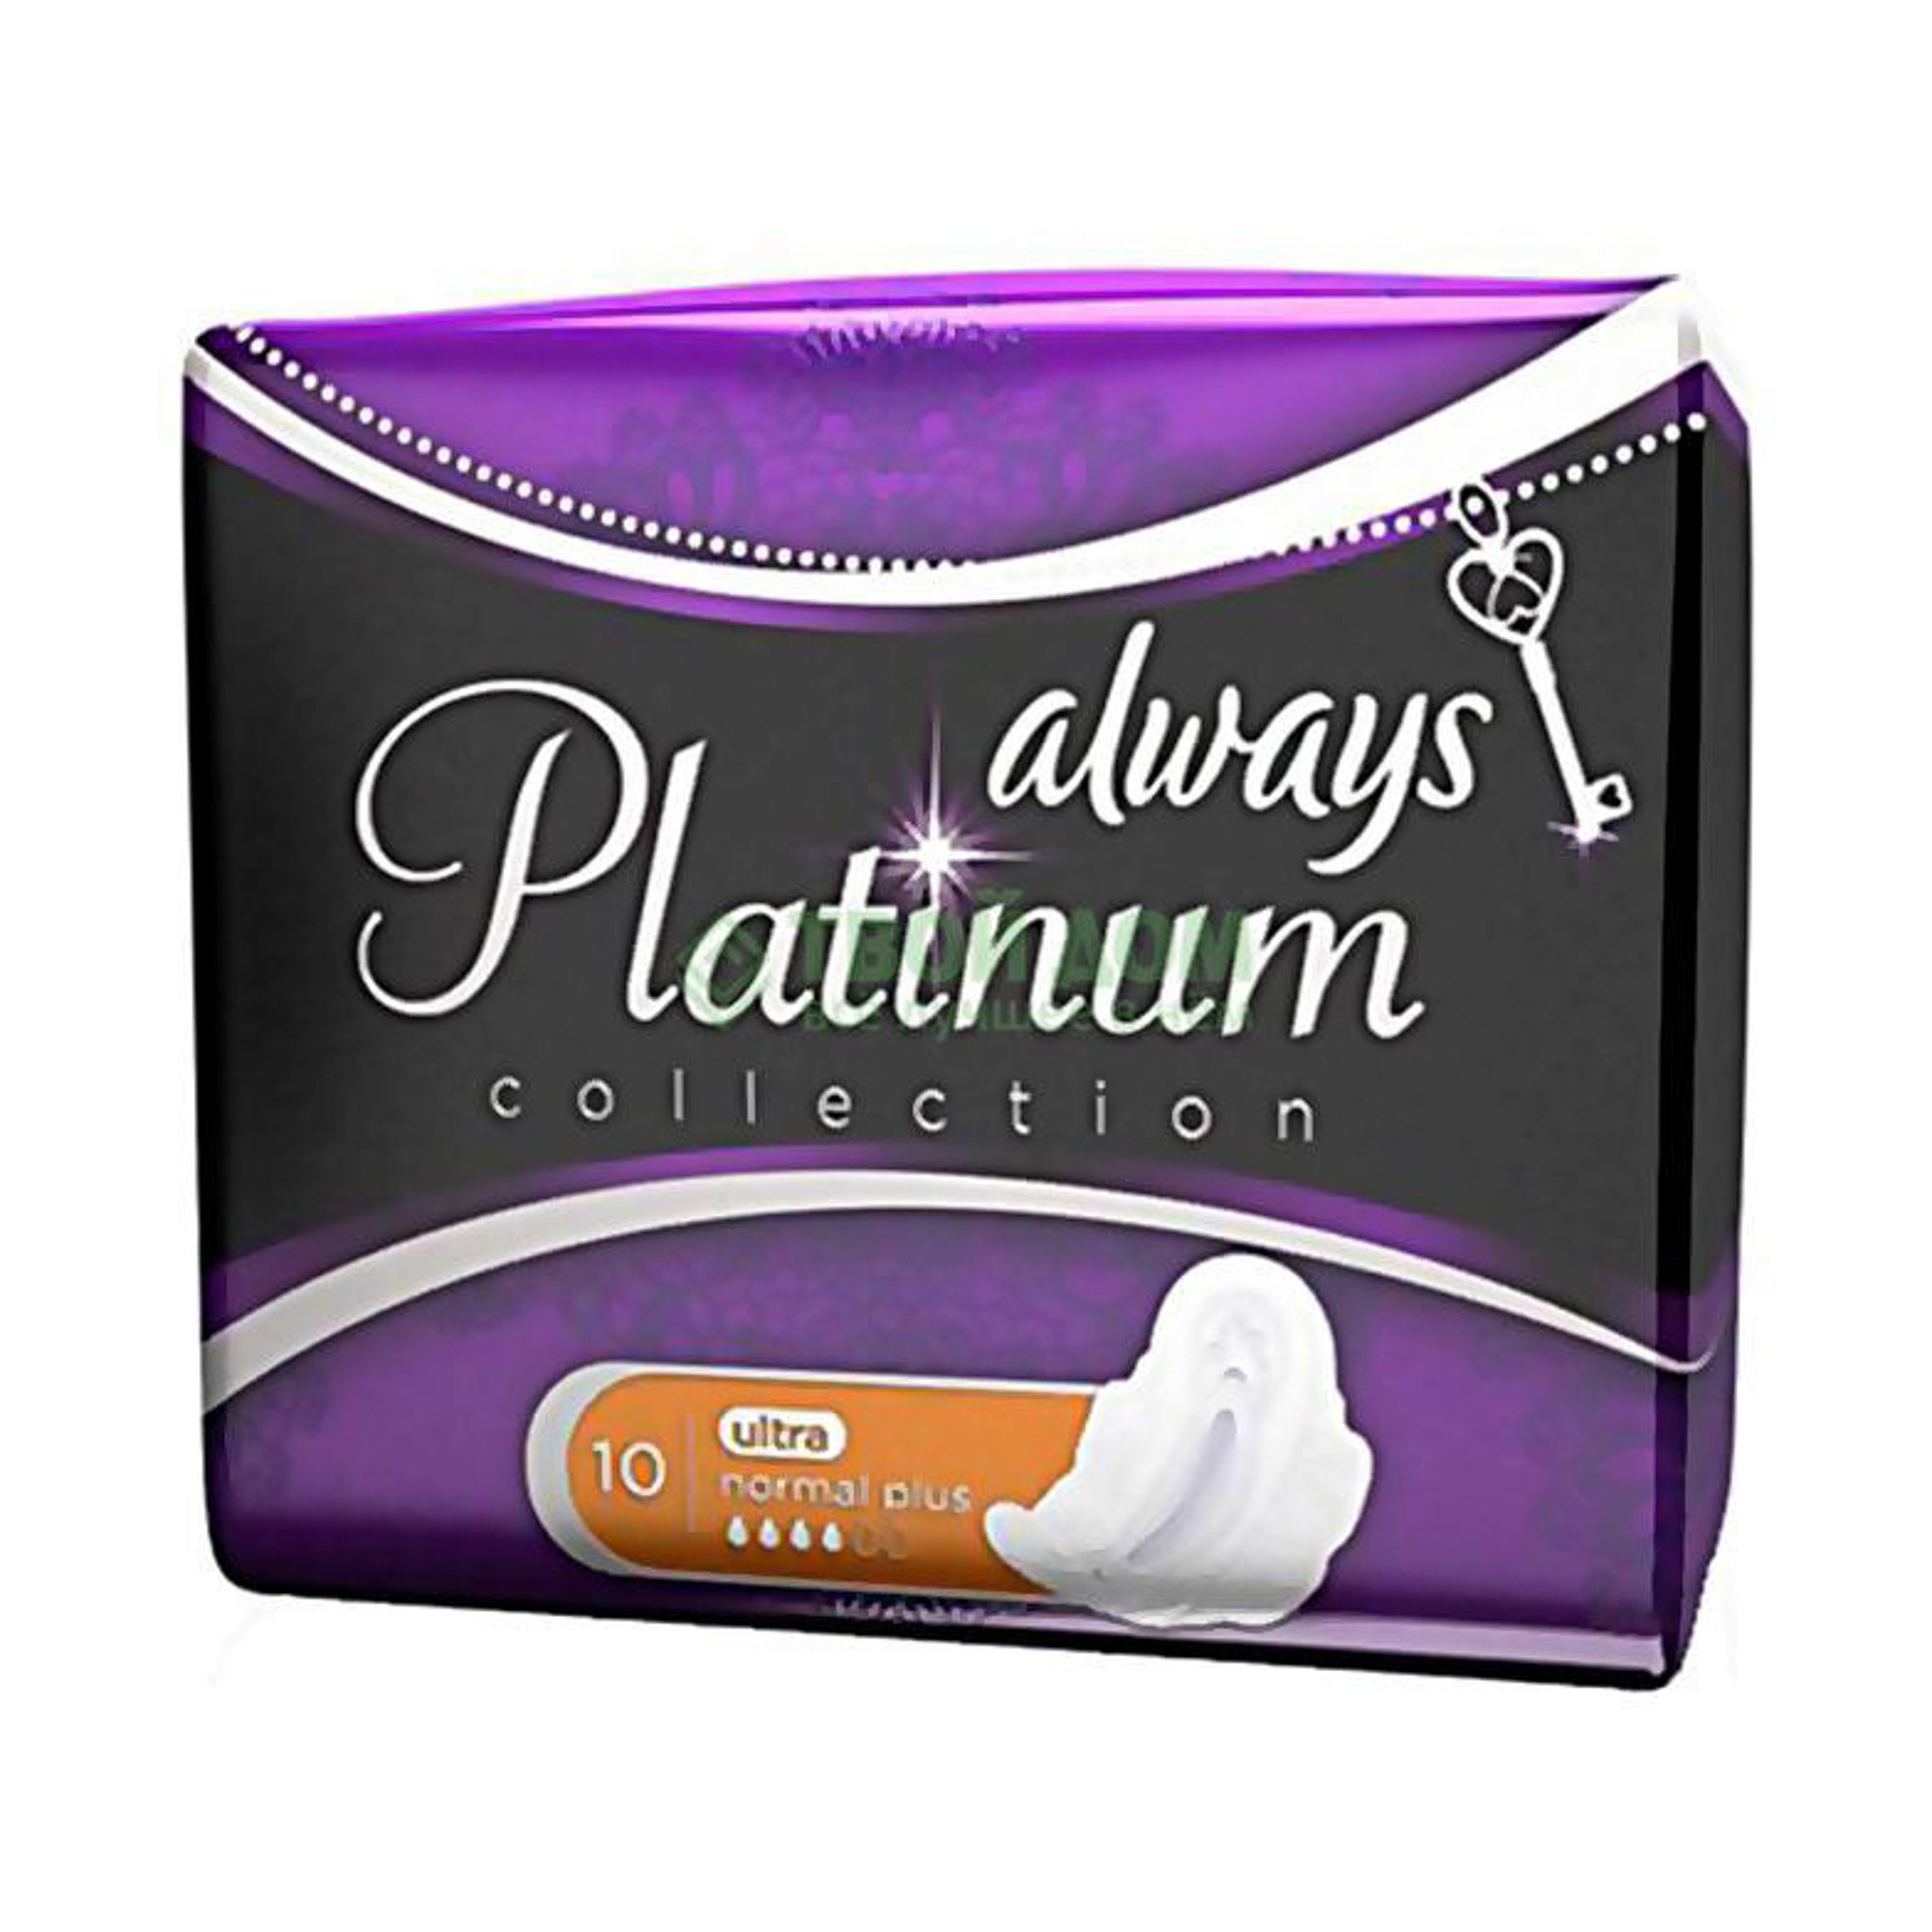 Женские гигиенические прокладки с крылышками Always Platinum Нормал Плюс, размер 2, 8шт